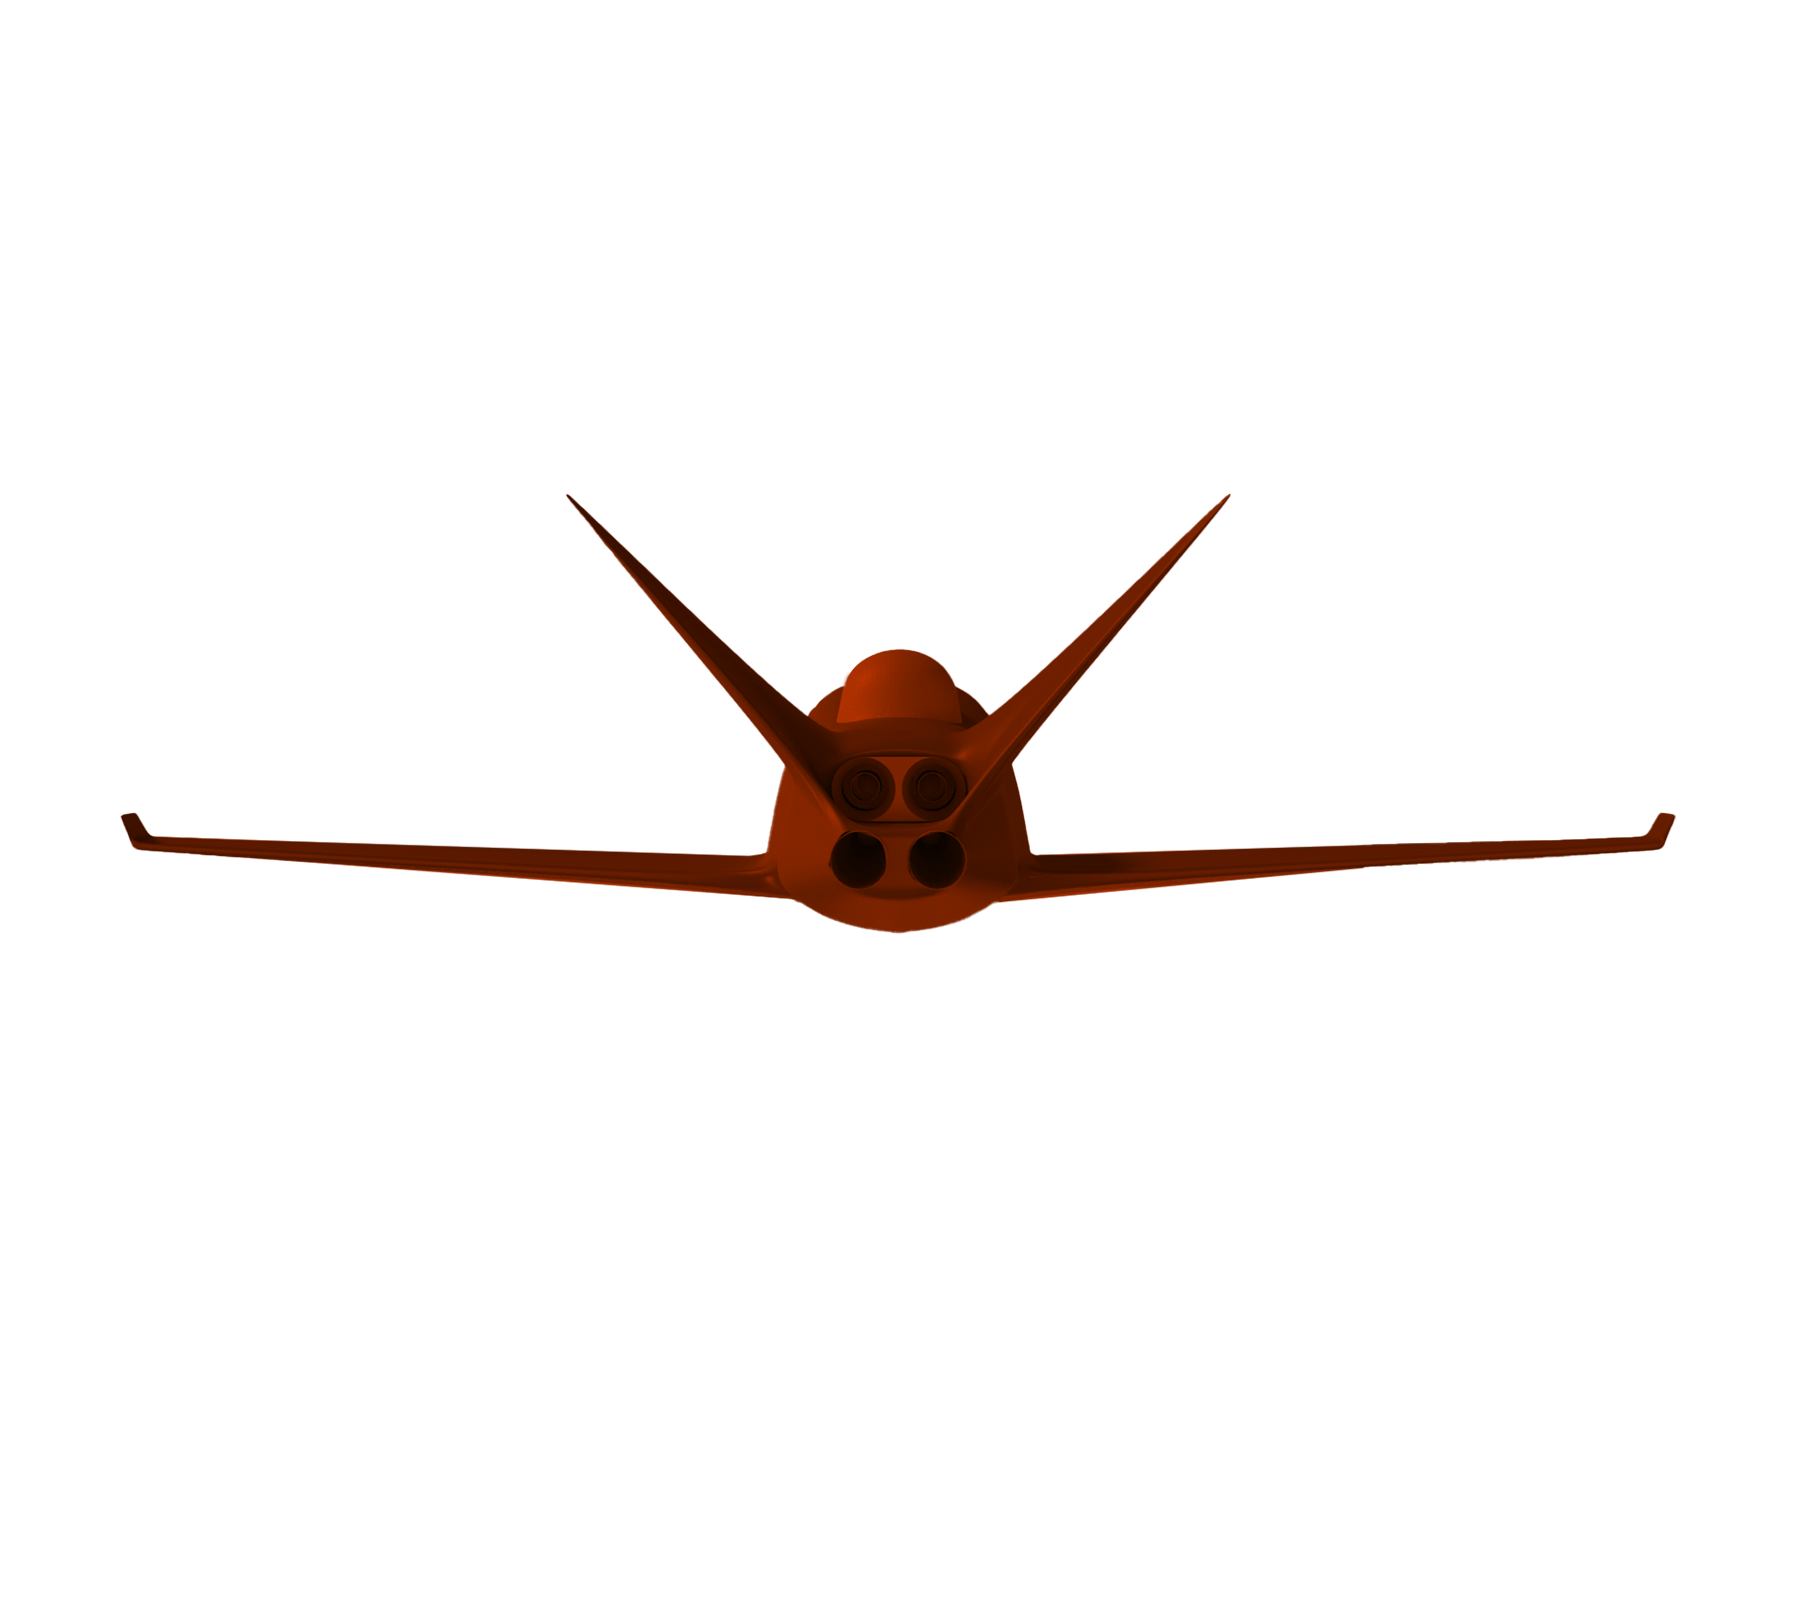 Concept aircraft